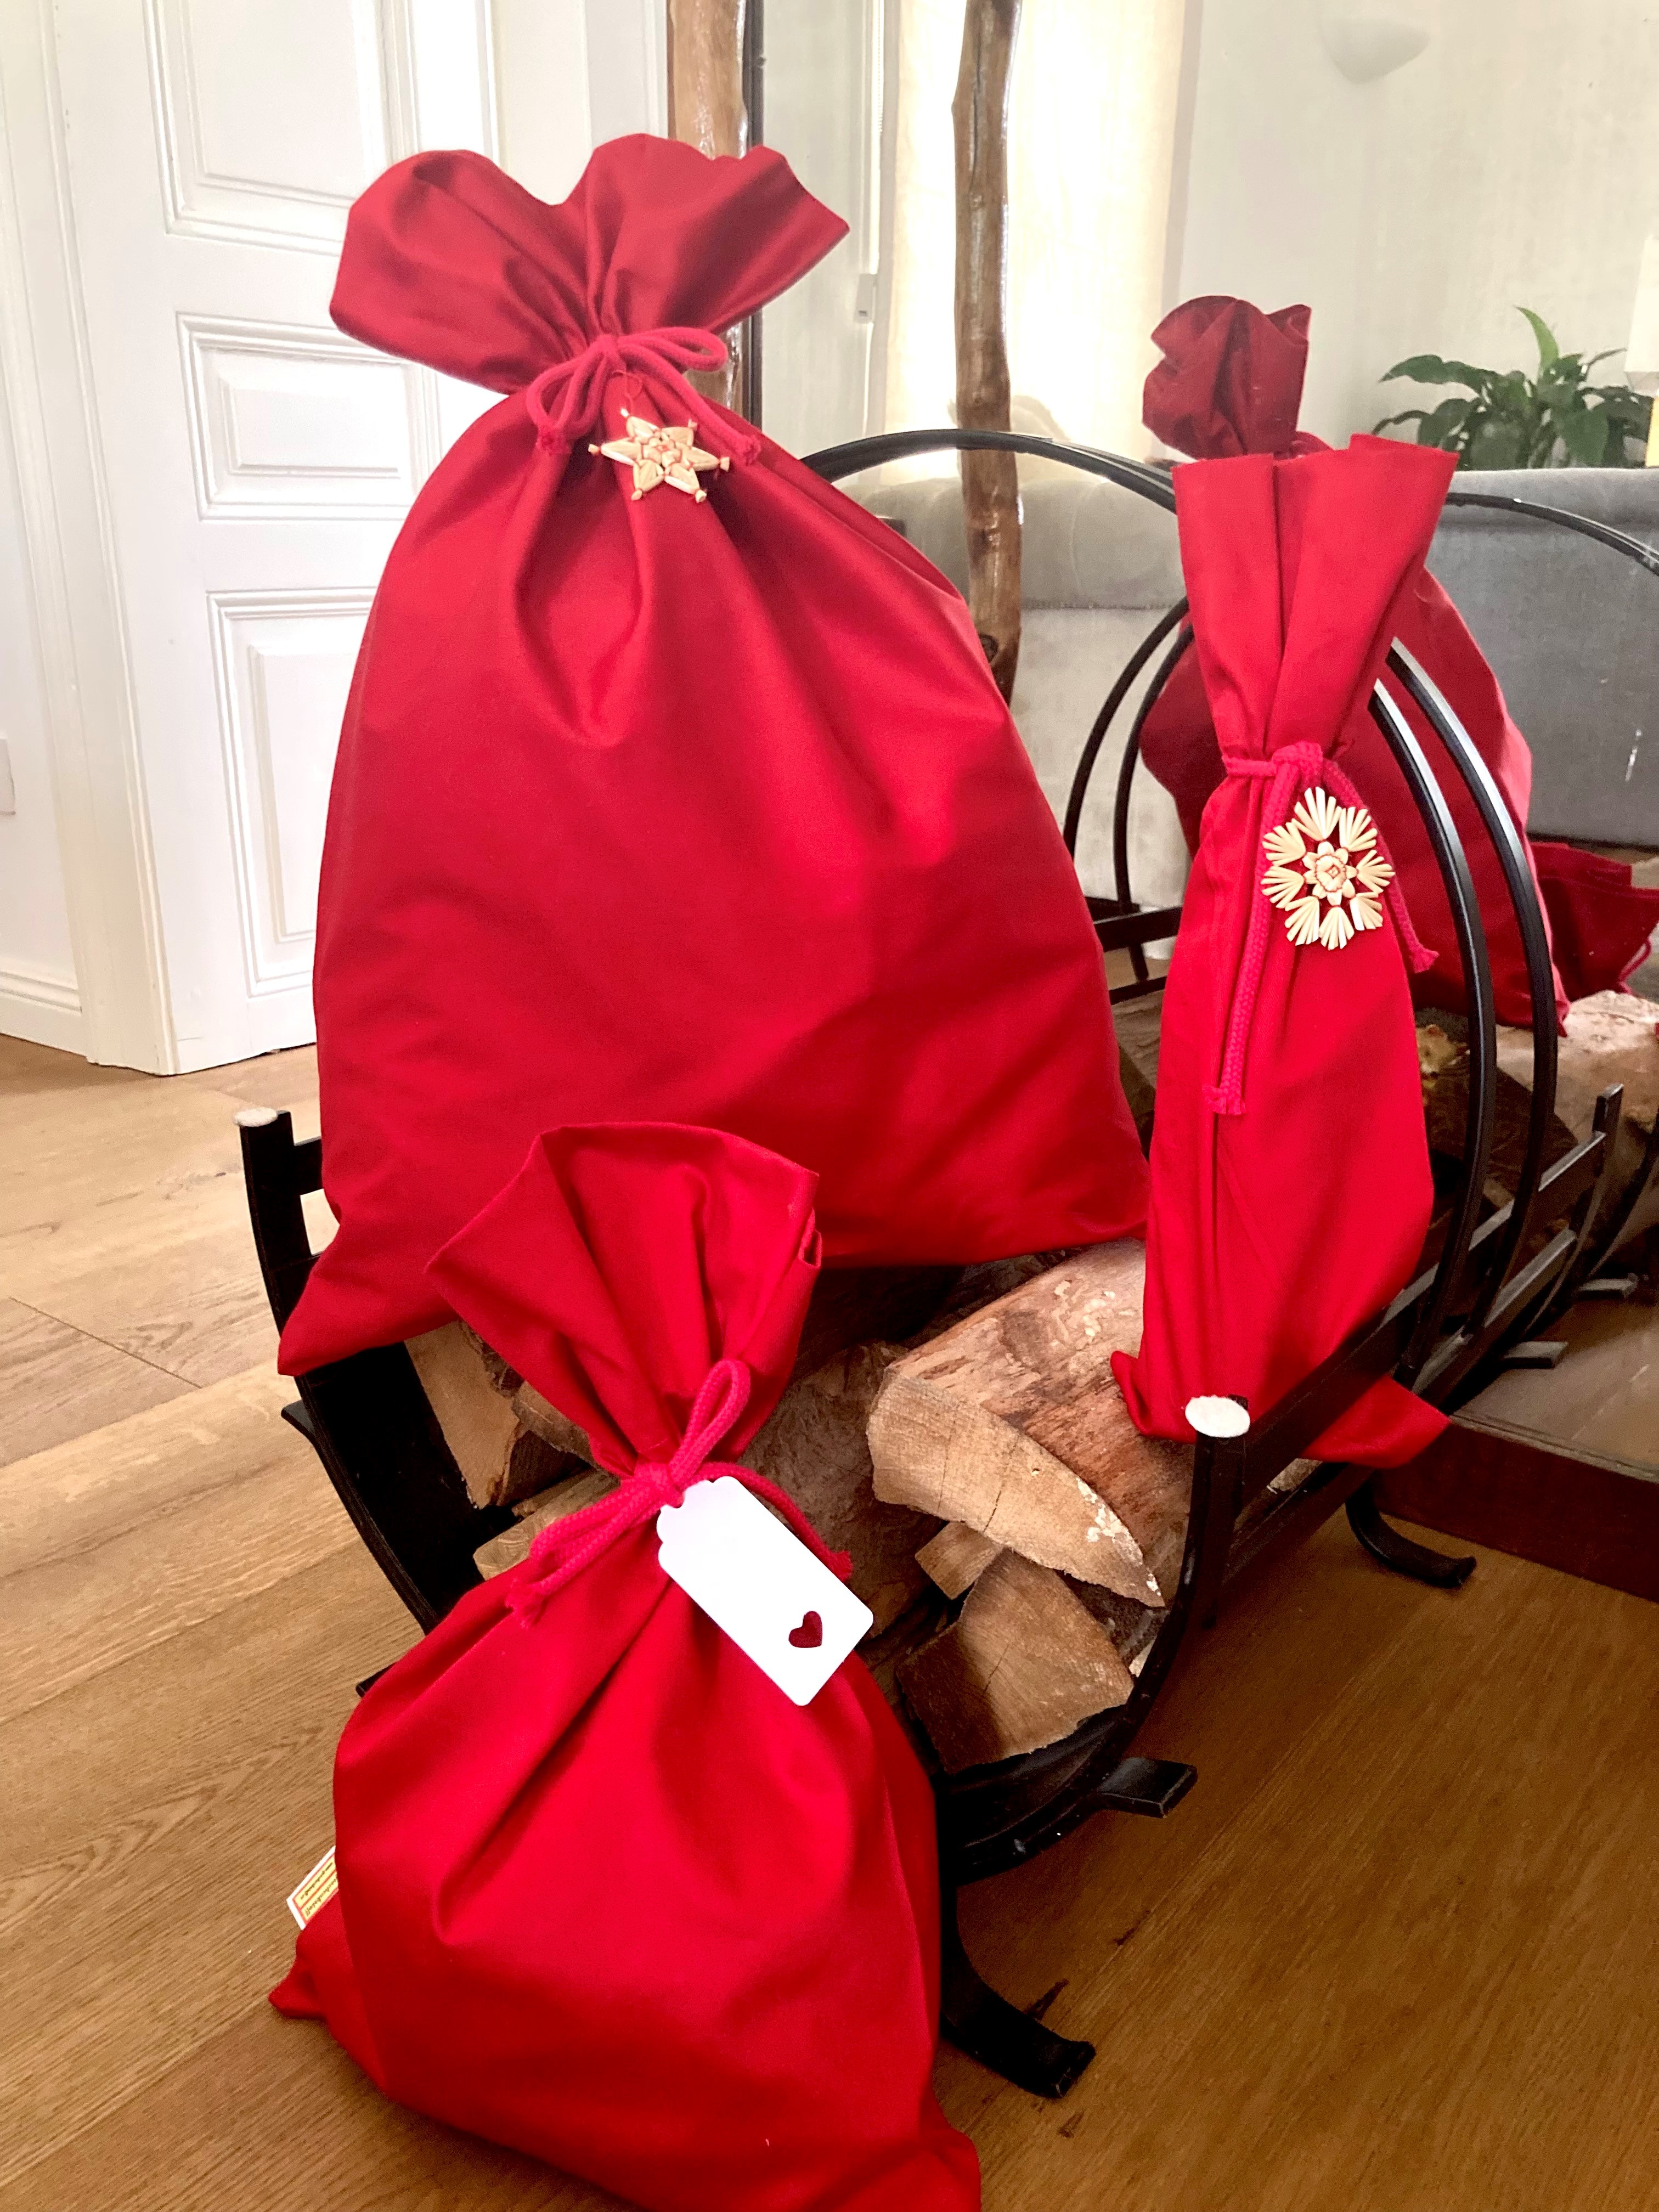 Weihnachten: Einfach Rote-Geschenkstoff-Säcke, XL & L & Flasche